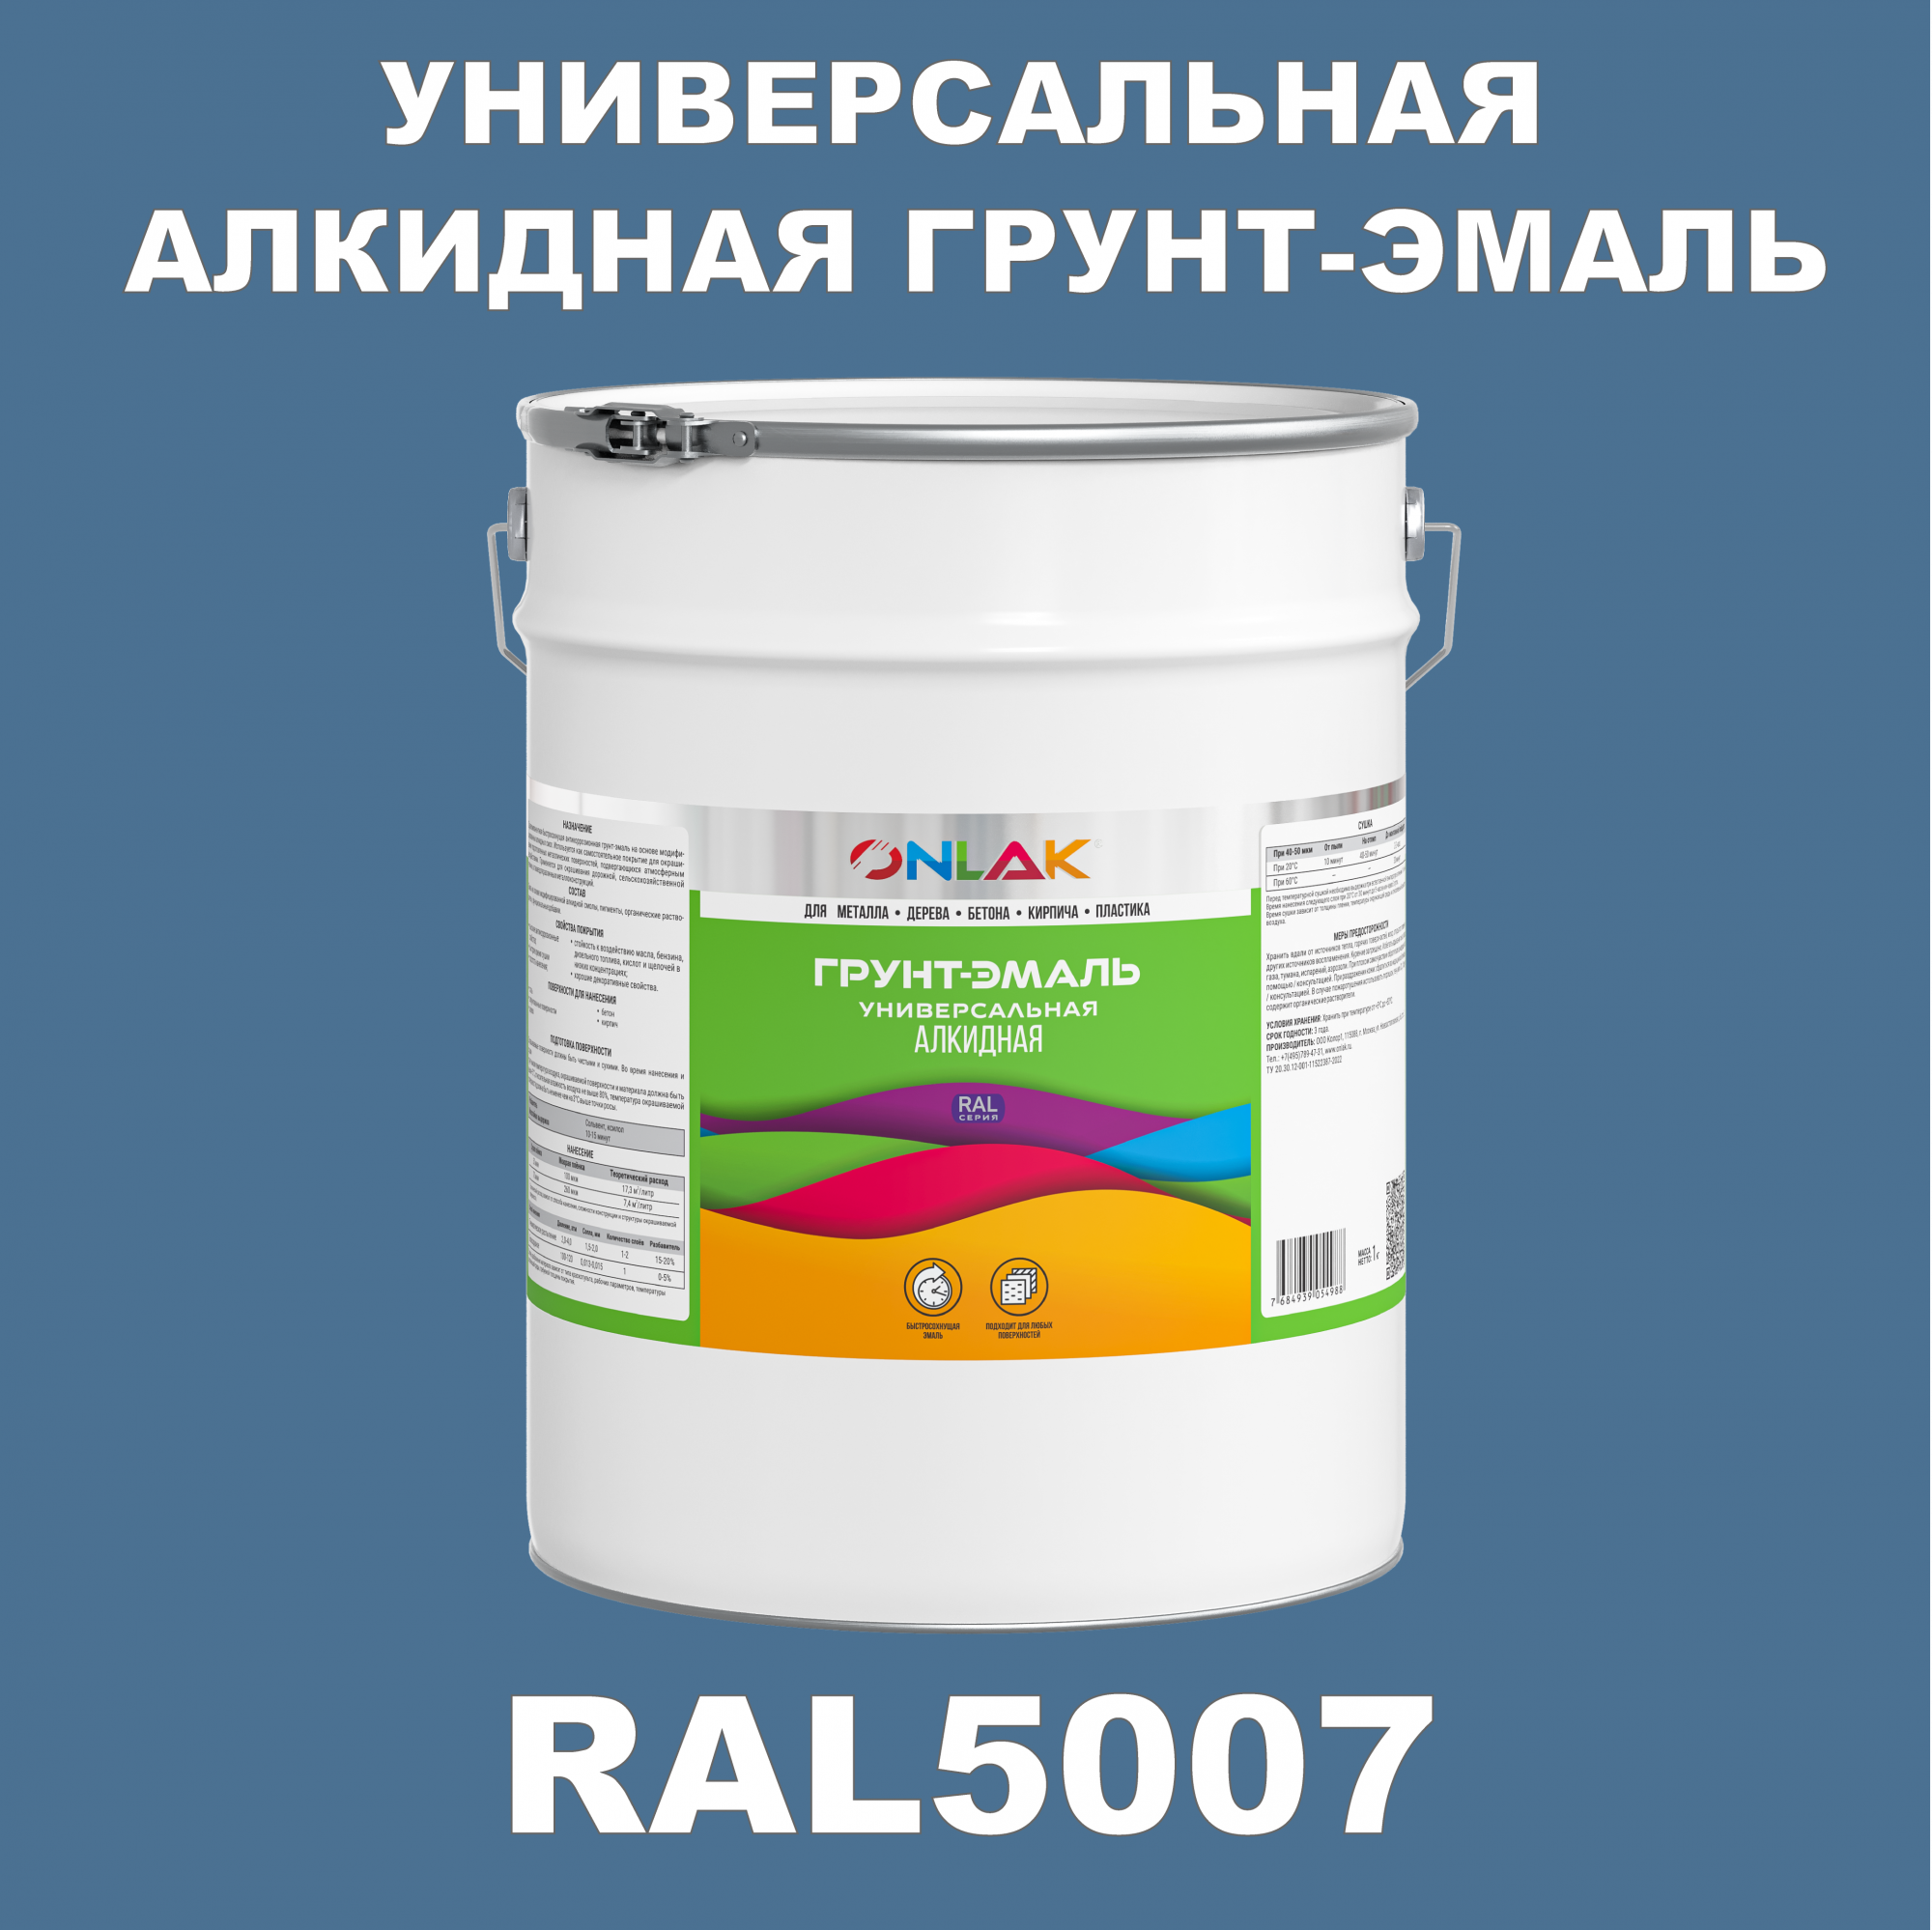 Грунт-эмаль ONLAK 1К RAL5007 антикоррозионная алкидная по металлу по ржавчине 20 кг грунт эмаль аэрозольная престиж 3в1 алкидная коричневая ral 8017 425 мл 0 425 кг